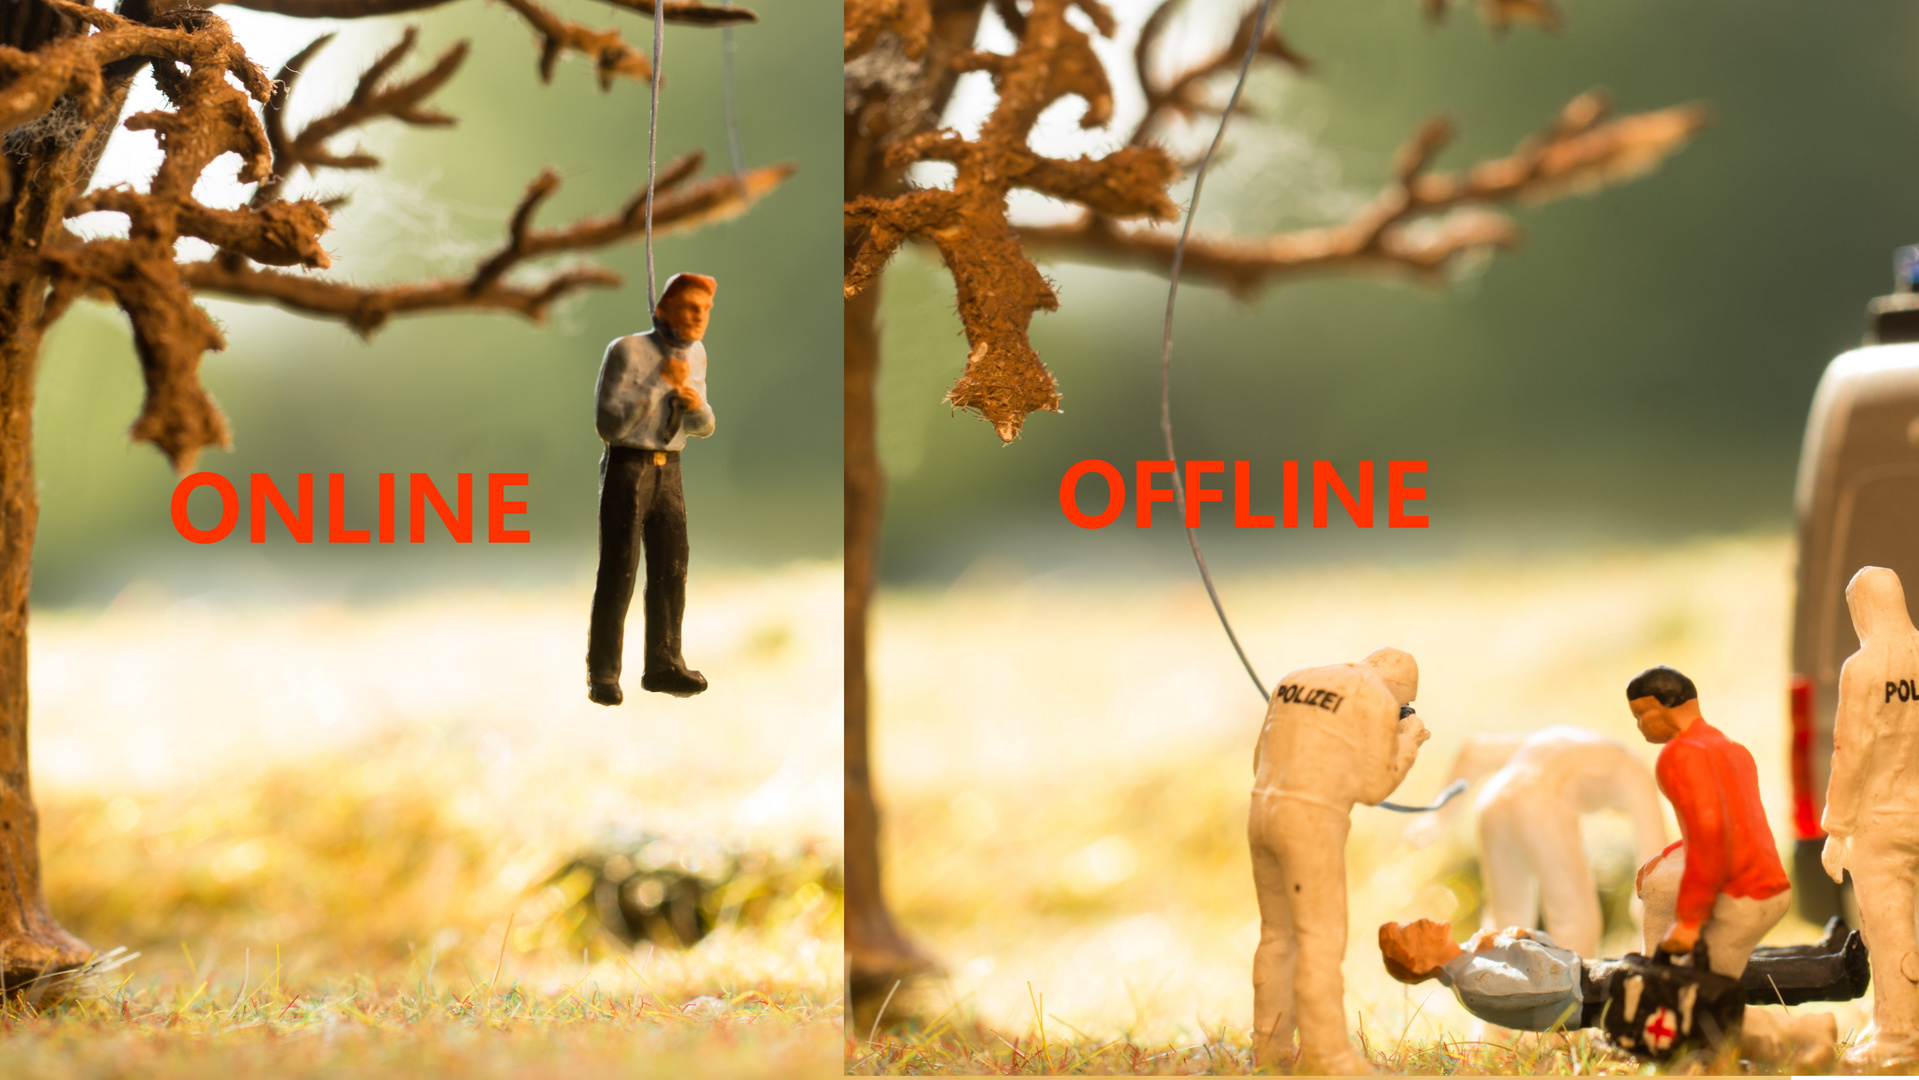 Online - Offline